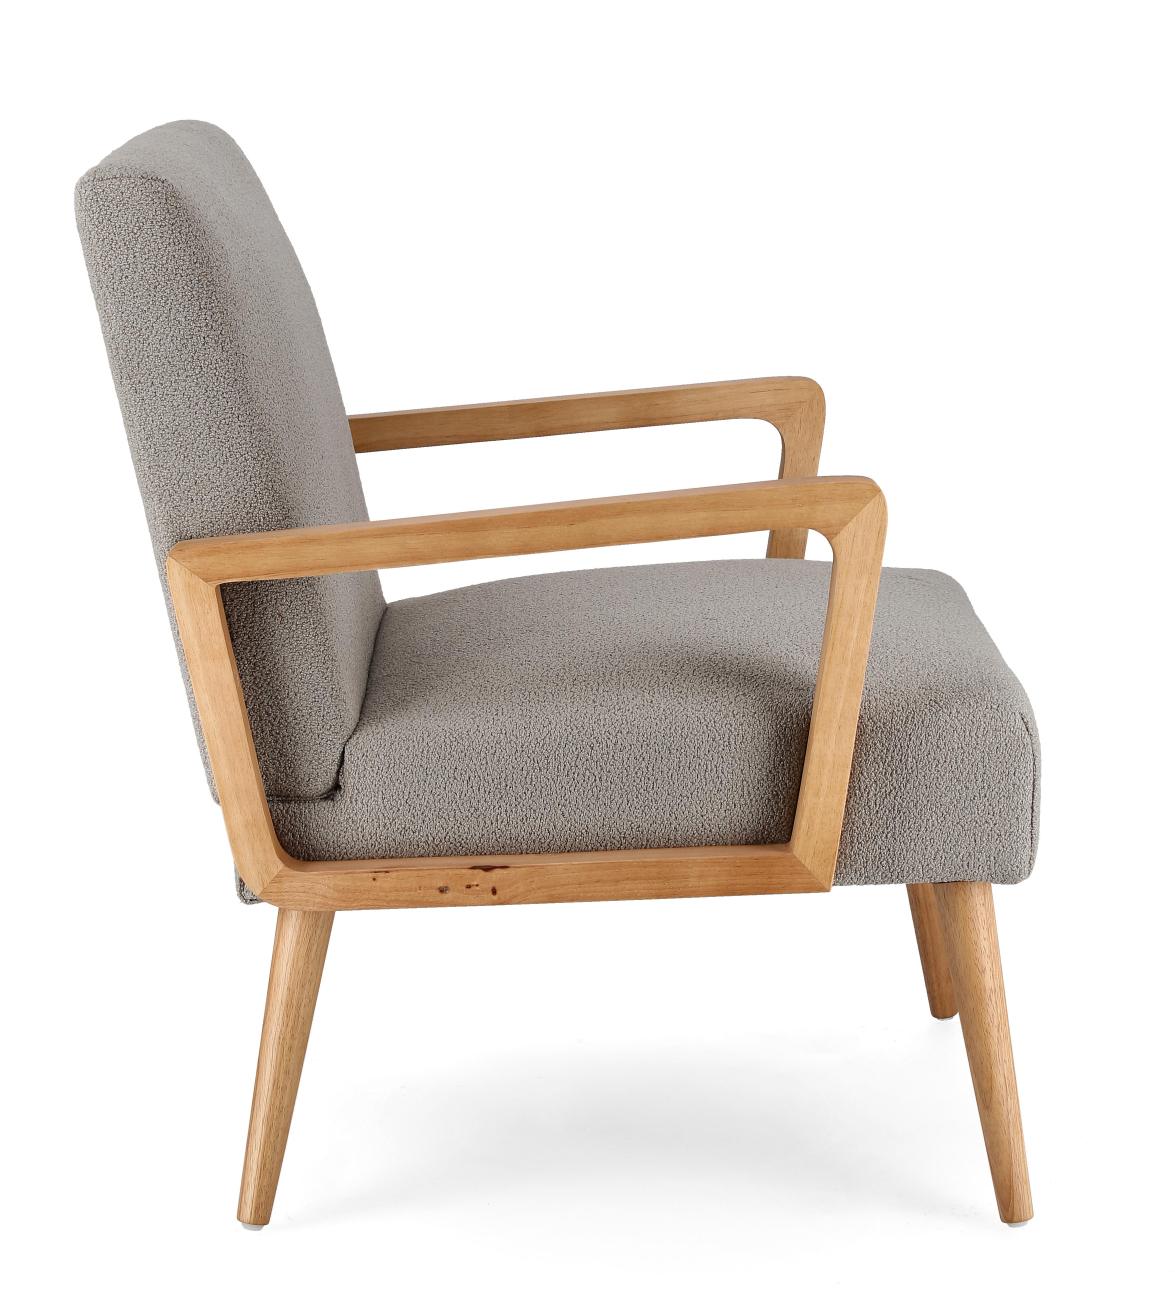 Der Sessel Verina überzeugt mit seinem modernen Stil. Gefertigt wurde er aus einem Stoff-Bezug, welcher einen grauen Farbton besitzt. Das Gestell ist aus Kautschukholz und hat eine natürliche Farbe. Der Sessel verfügt über eine Armlehne.